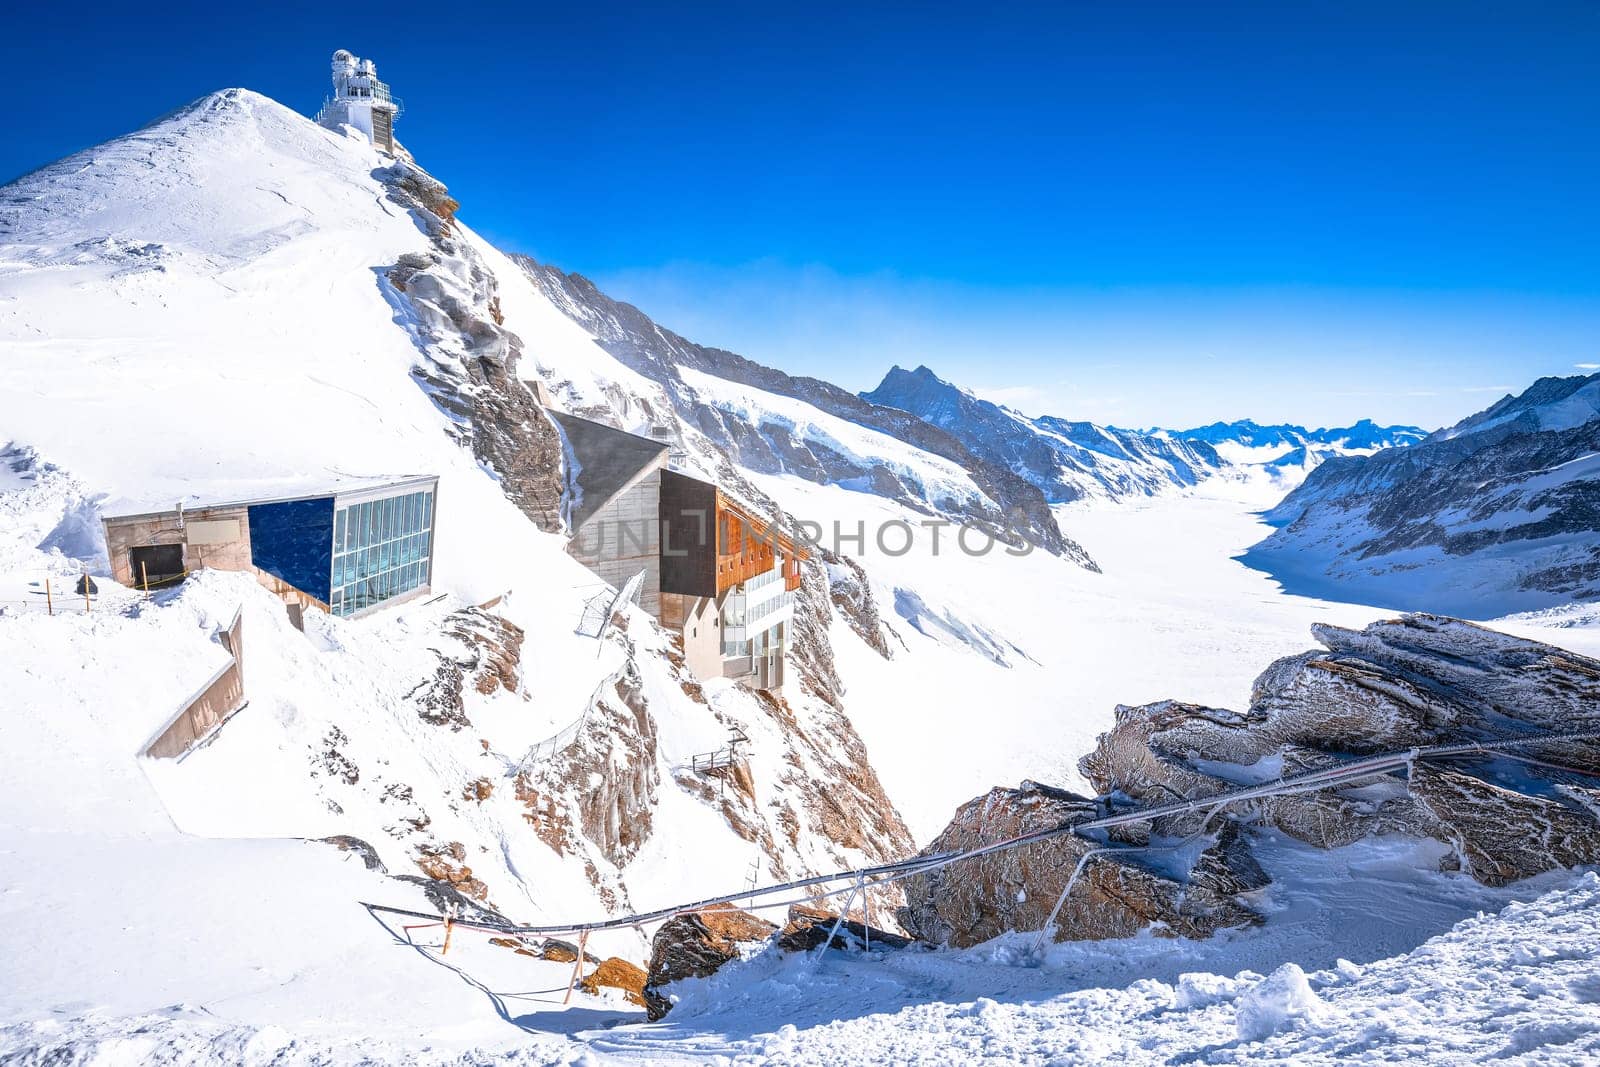 Jungfraujoch Alps peak railway station and Sphinx view, engineering marvel called top of Europ by xbrchx